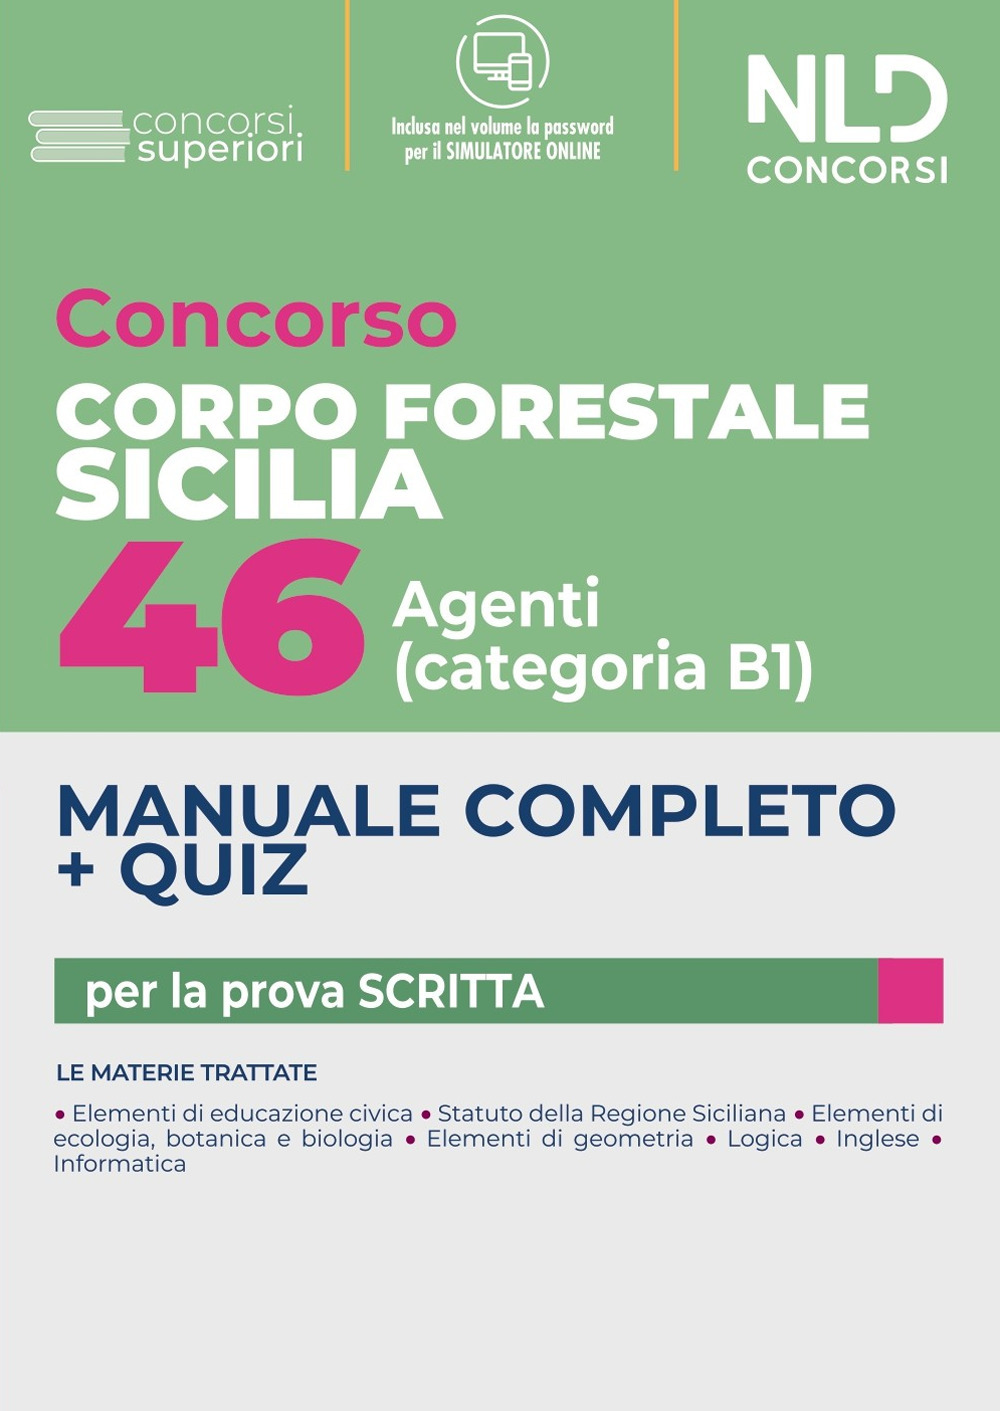 Concorso Regione Sicilia 46 agenti del Corpo Forestale - Cat. B1. Manuale completo + quiz per la prova scritta